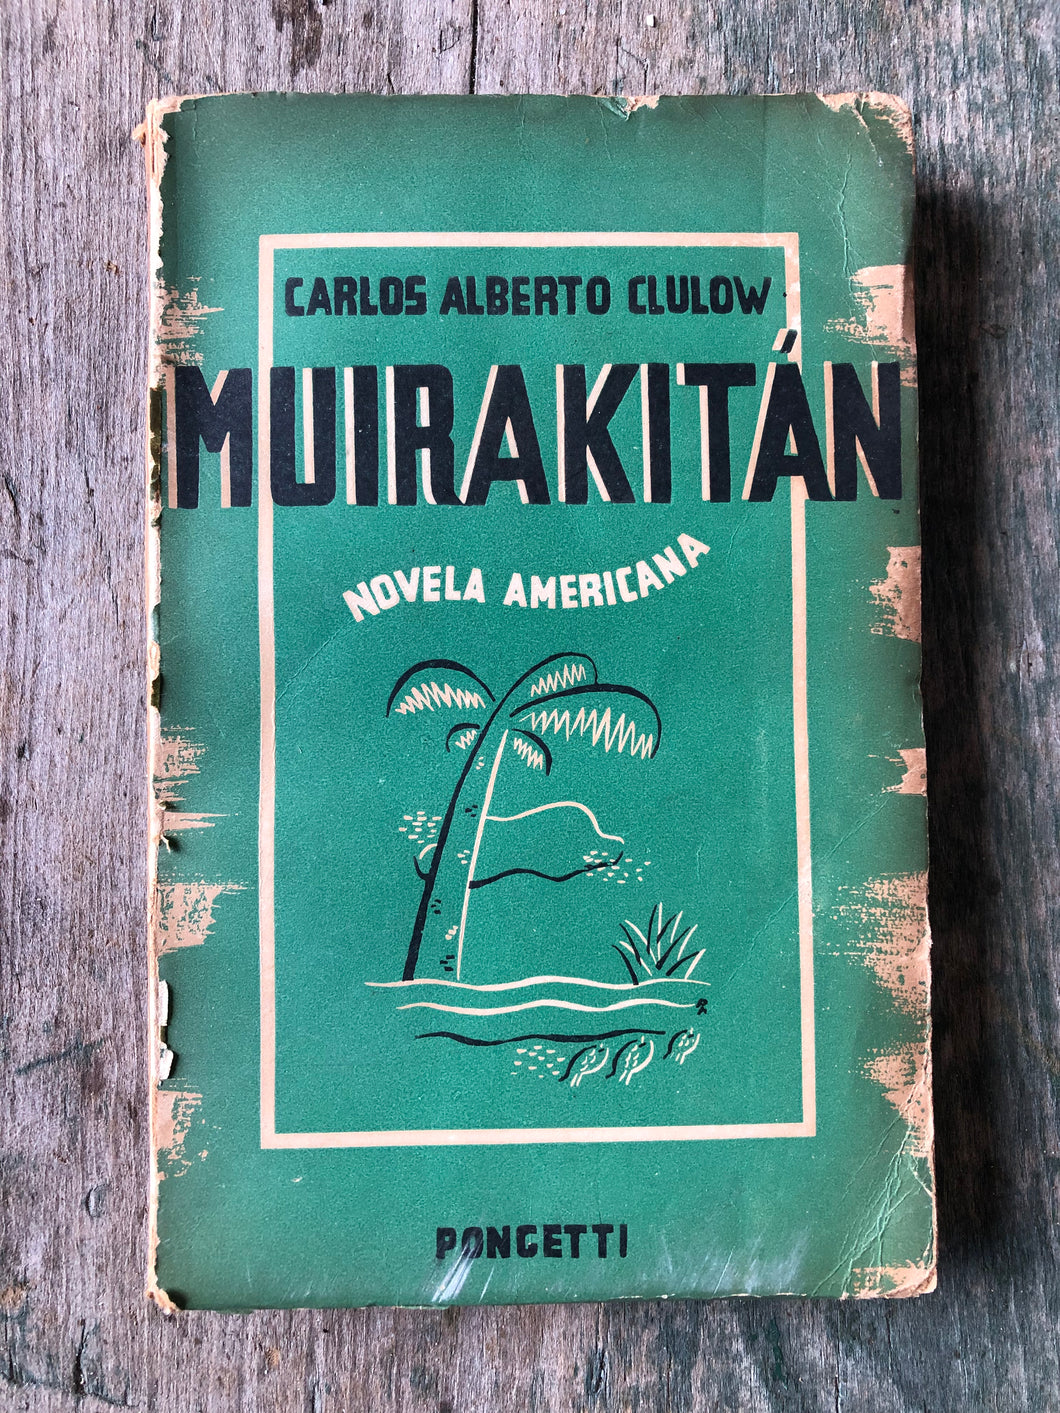 Muirakitan: Novela Americana by Carlos Alberto Clulow